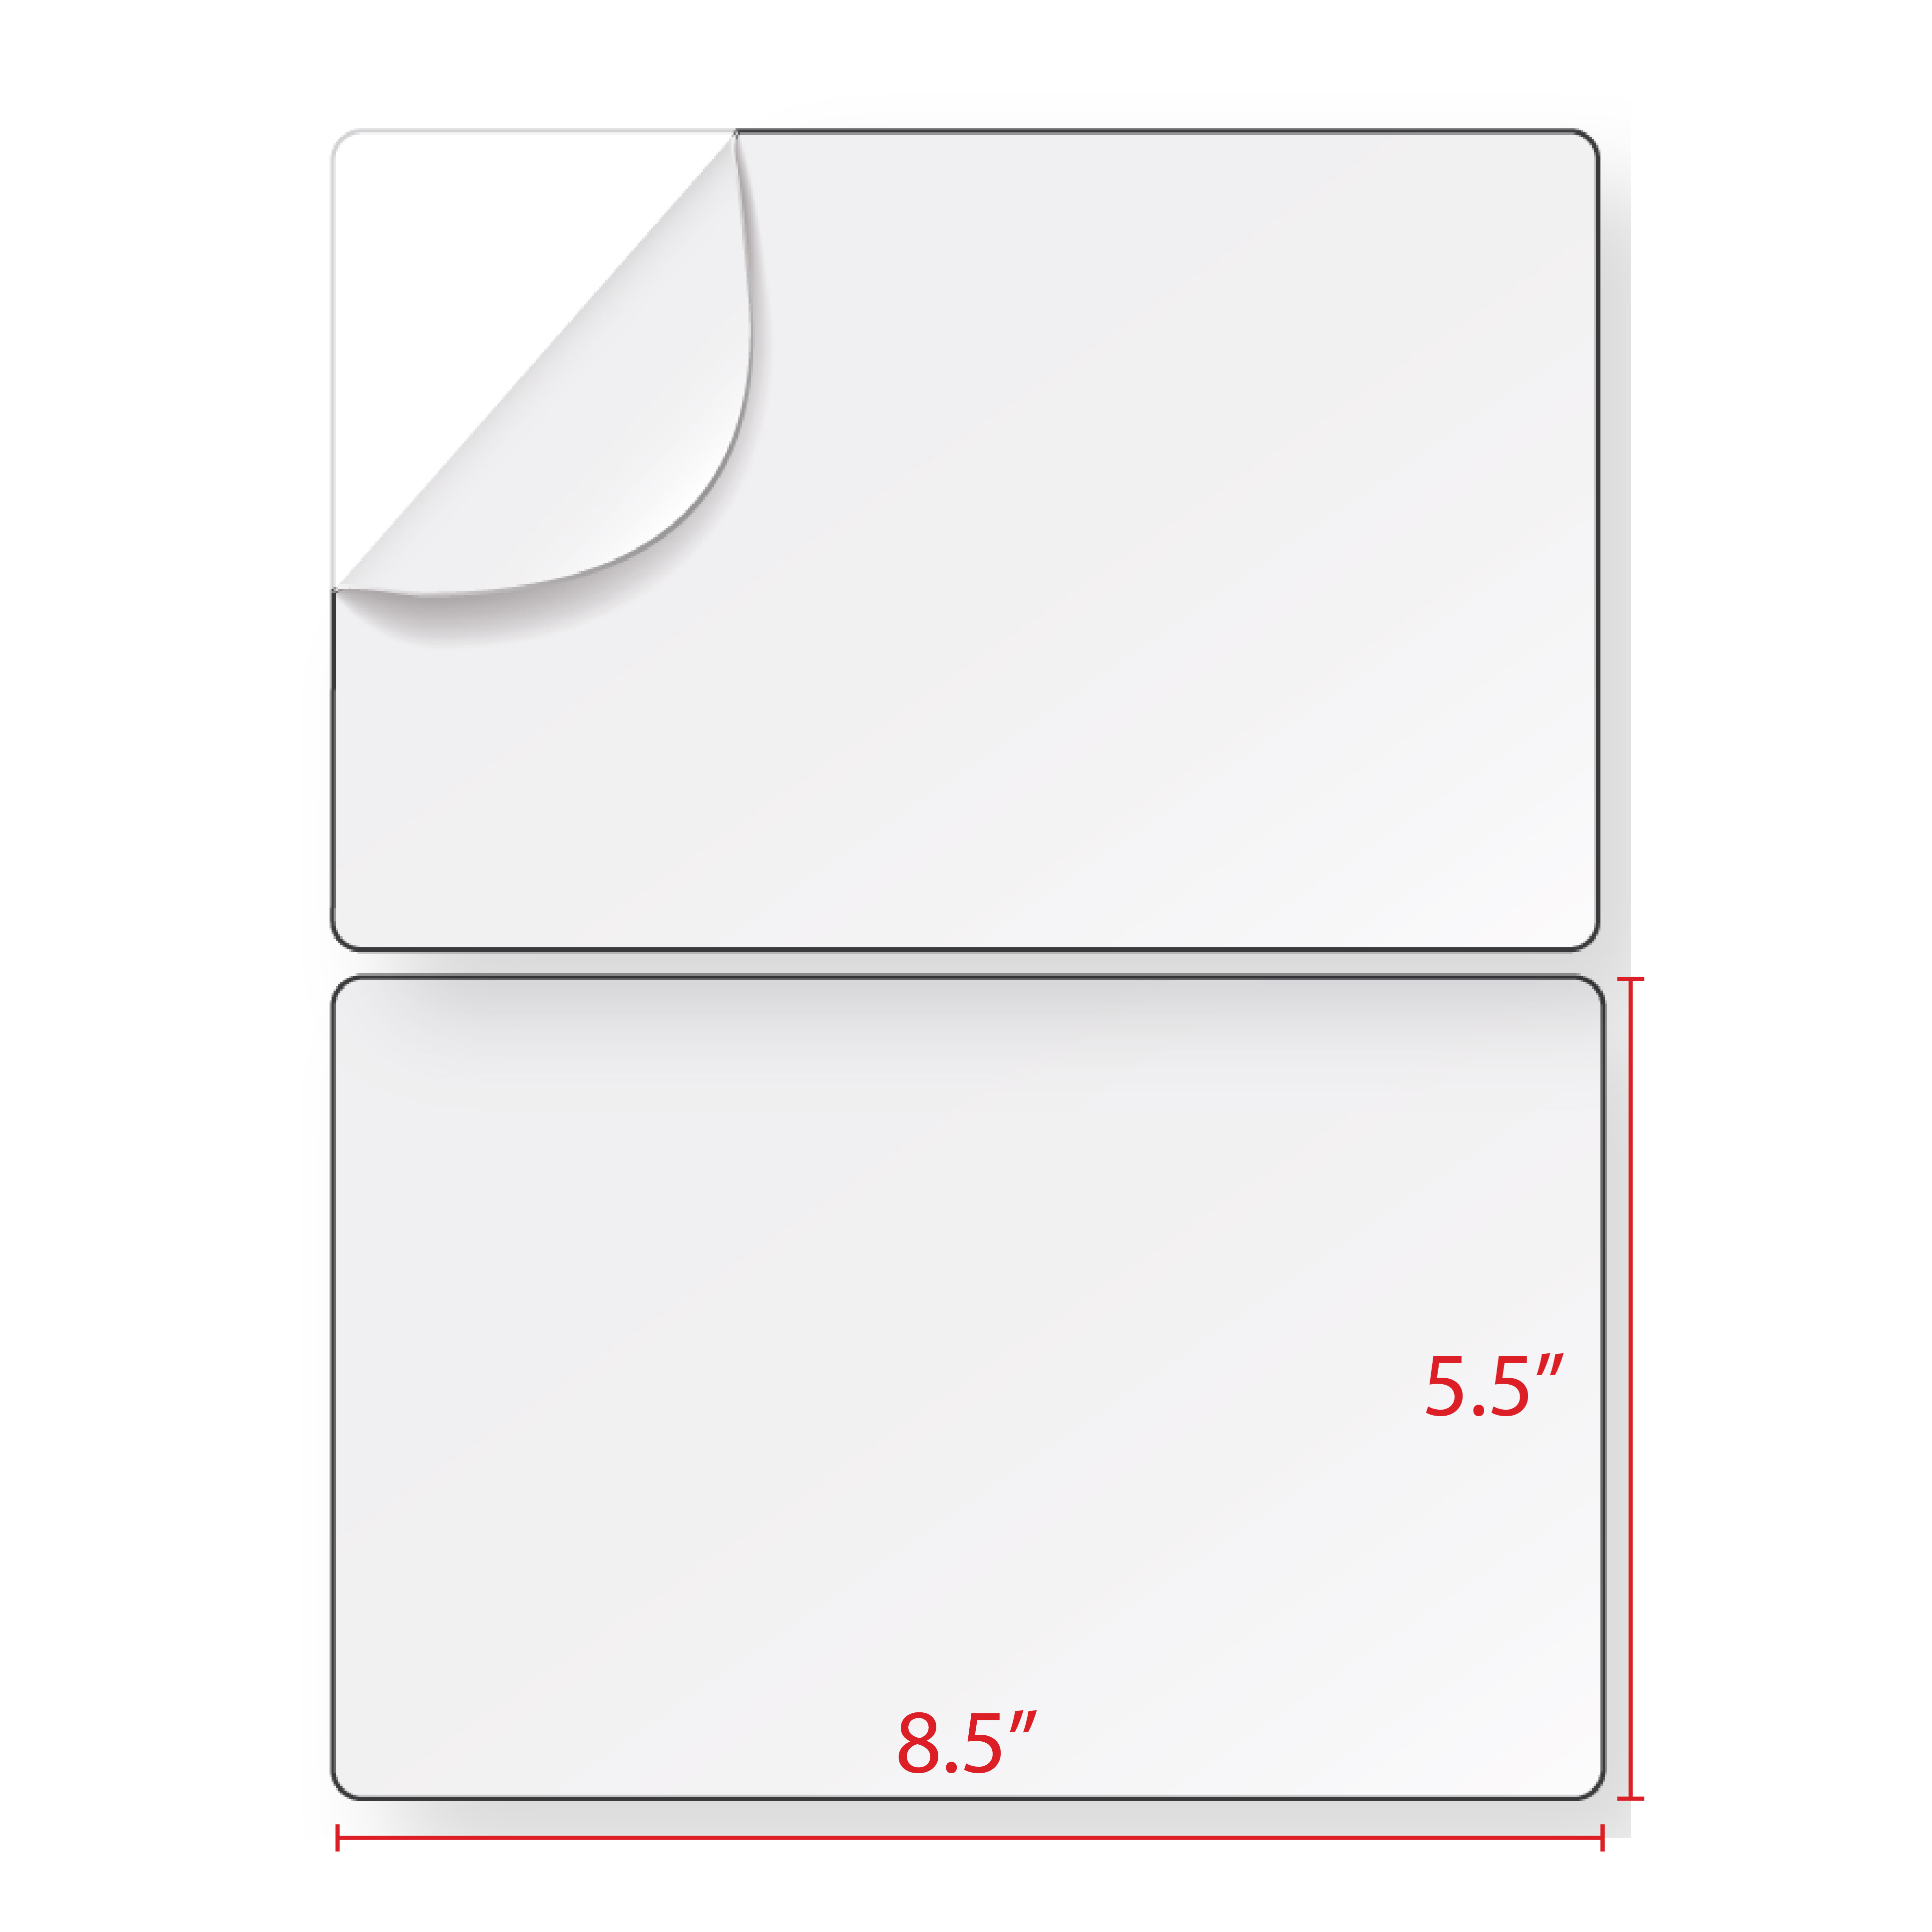 5.5" x 8.5" Half Sheet Postage Labels (2 Labels Per Sheet) - 2 UP